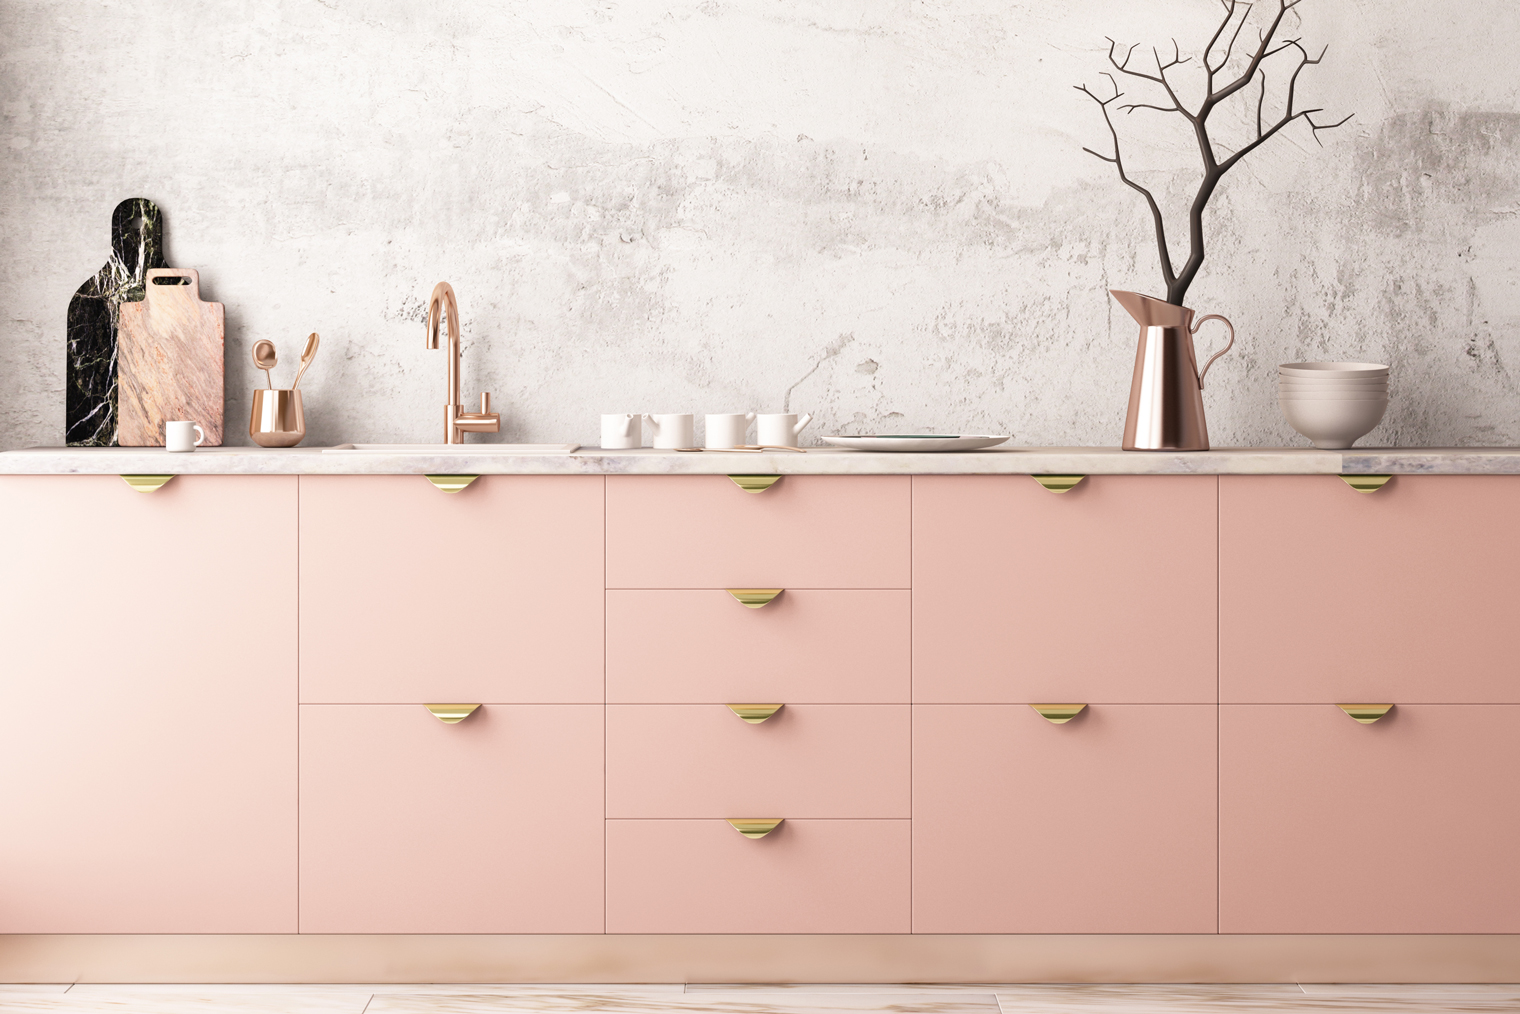 Бледно-розовый хорошо смотрится с оттенками серого и золотистыми деталями. Фотография: Philipp Shuruev / Shutterstock / FOTODOM